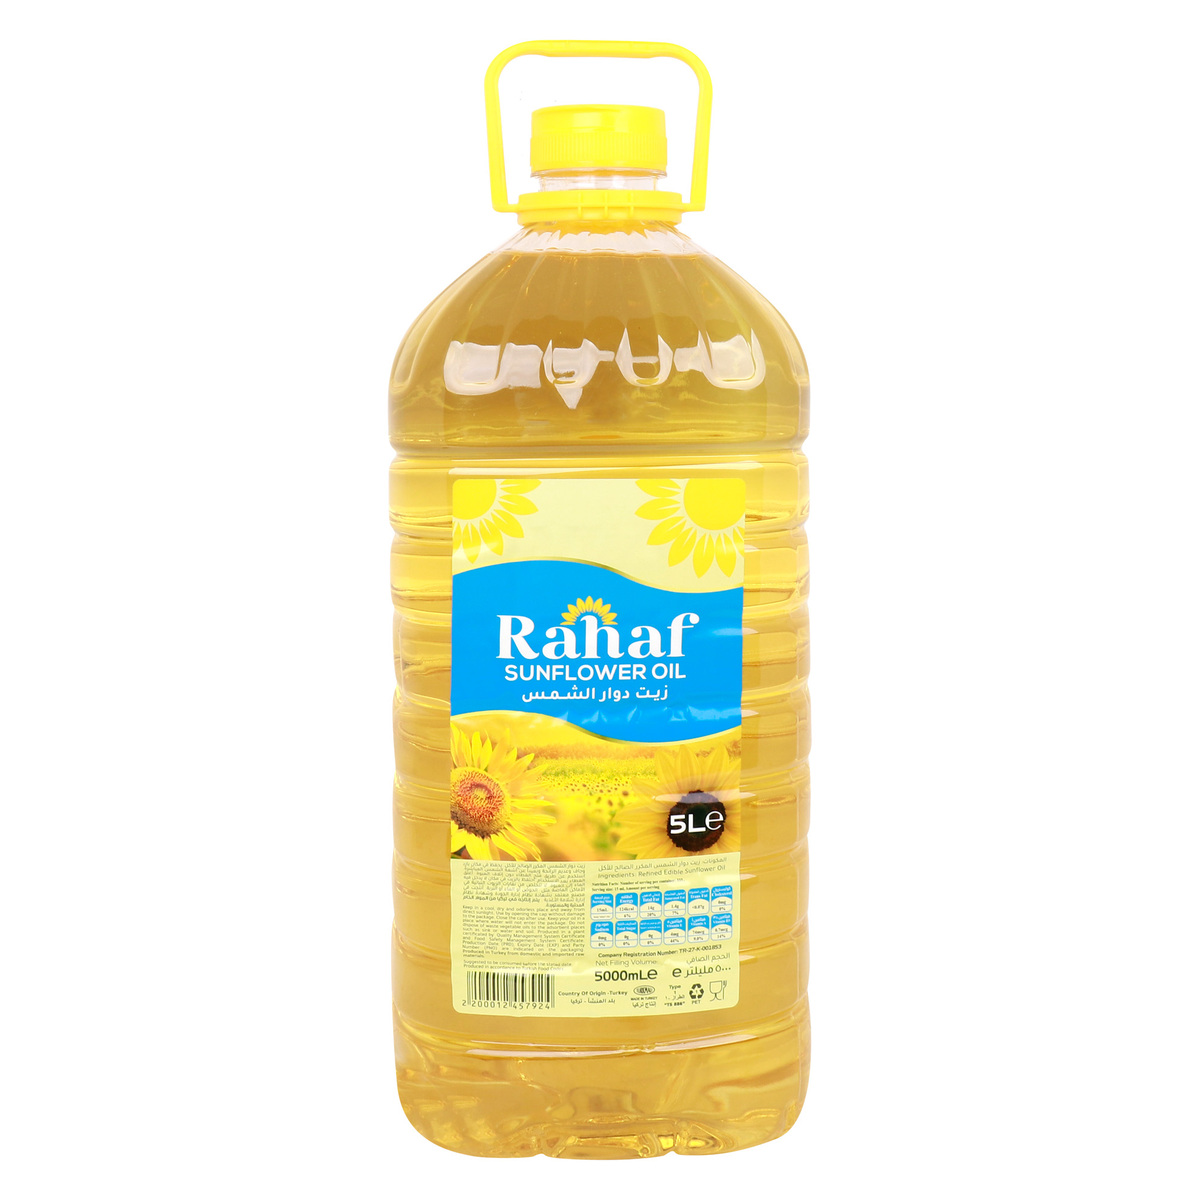 Buy Rahaf Sunflower Oil 5 Litres Online at Best Price | LuLu Year End Wonders | Lulu UAE in UAE